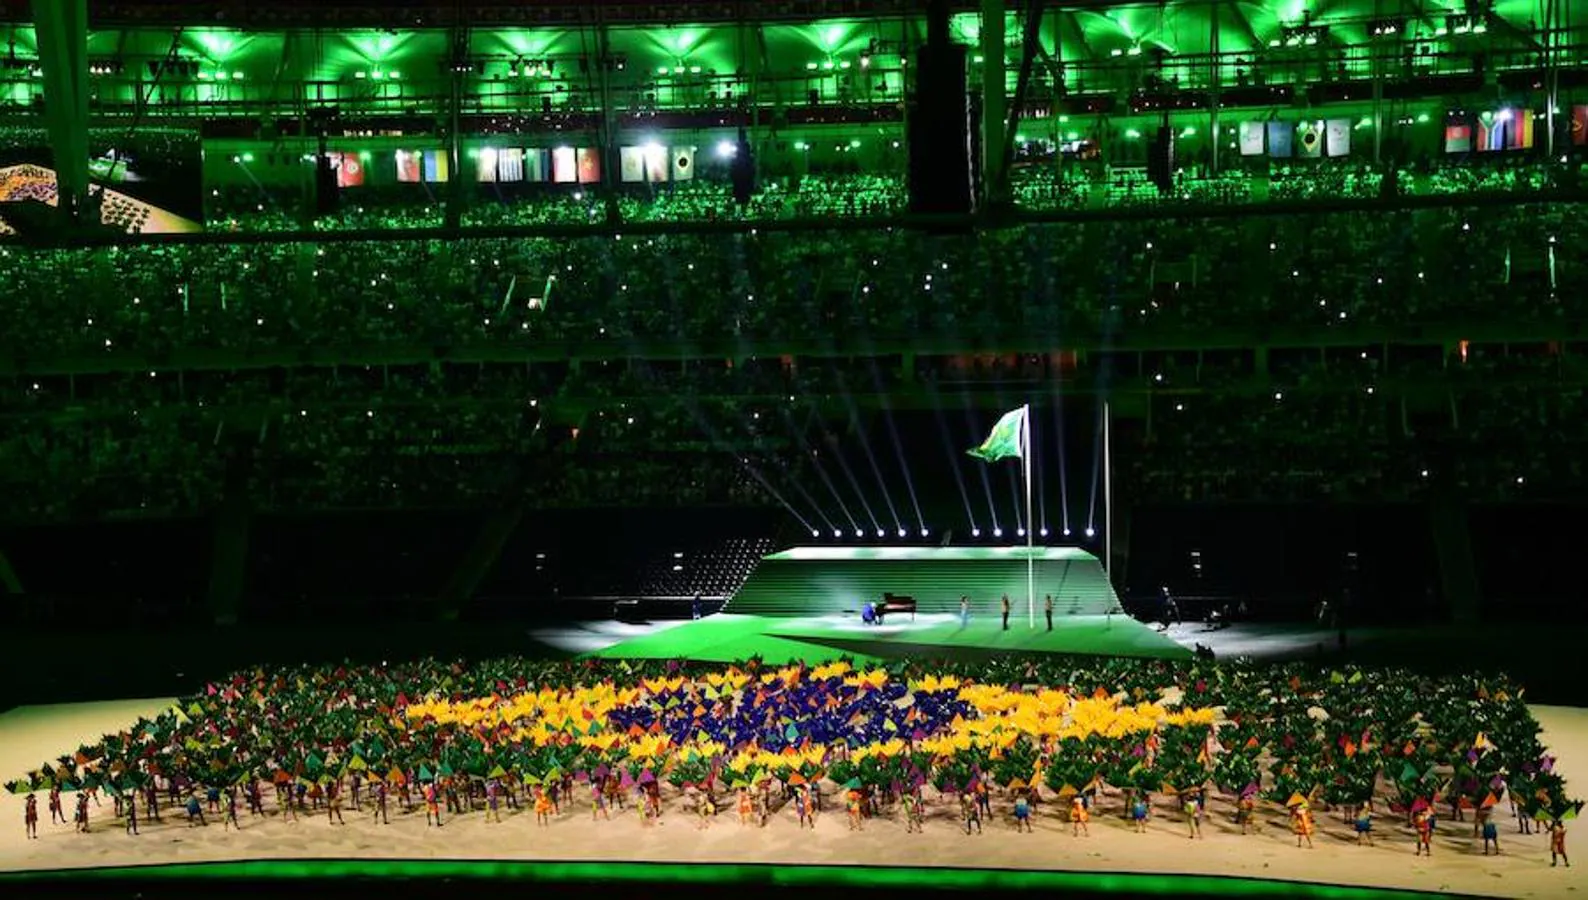 Rio de Janeiro, centro del deporte. De nuevo la ciudad es el centro del deporte mundial. En esta ocasión, paralímpicos de todos los lugares se enfrentarán en una competición, que si bien no capta tanta atención, deja unas historias impresionantes y unas imágenes tanto o más espectaculares que las de sus homólogos olímpicos